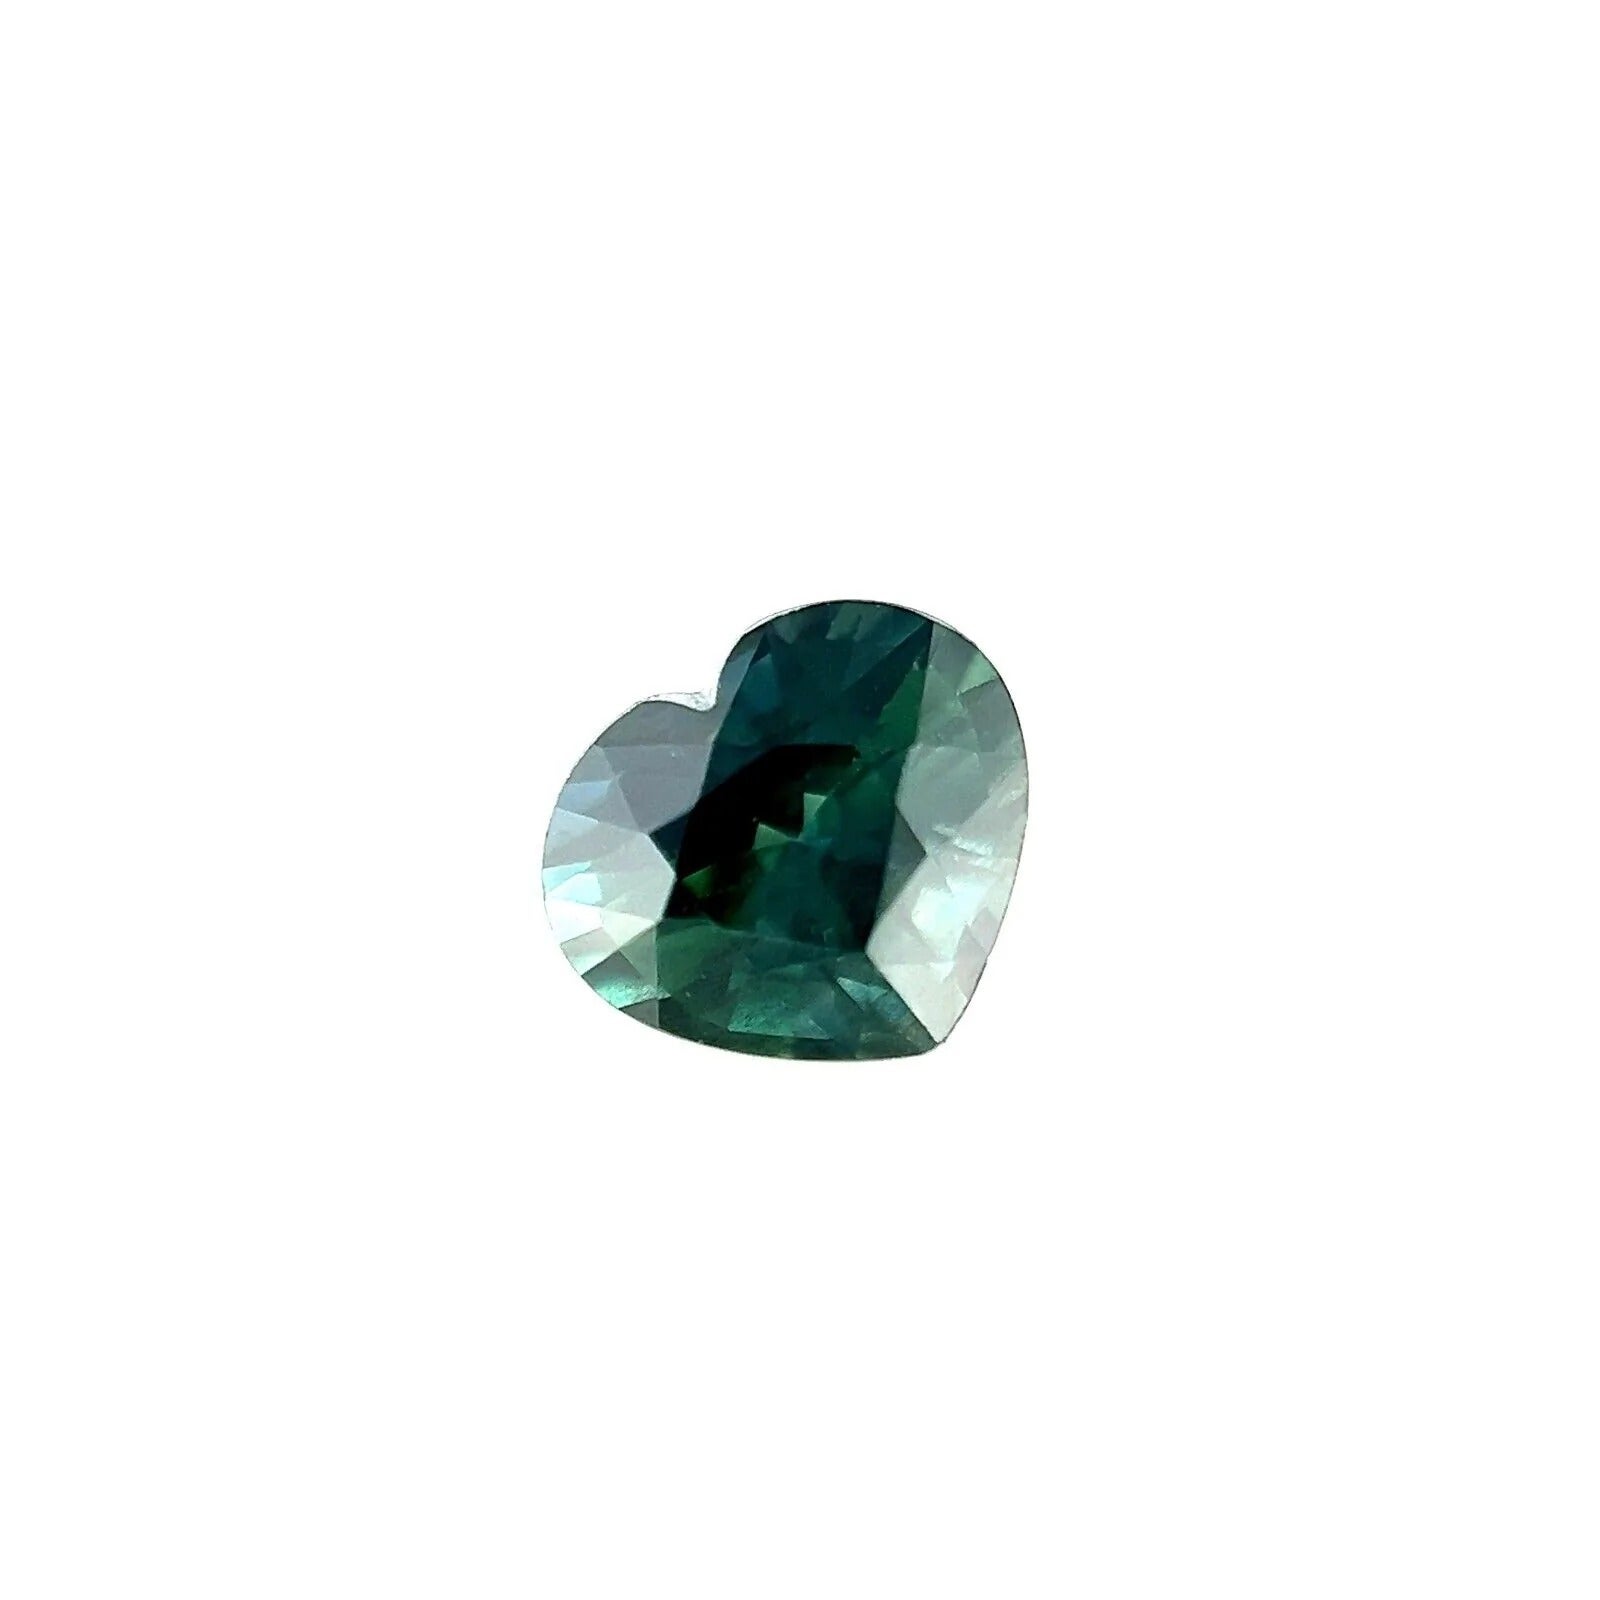 Pierre précieuse non traitée, saphir naturel non traité de 1,16 carat, taille cœur en sarcelle verte et bleue VS